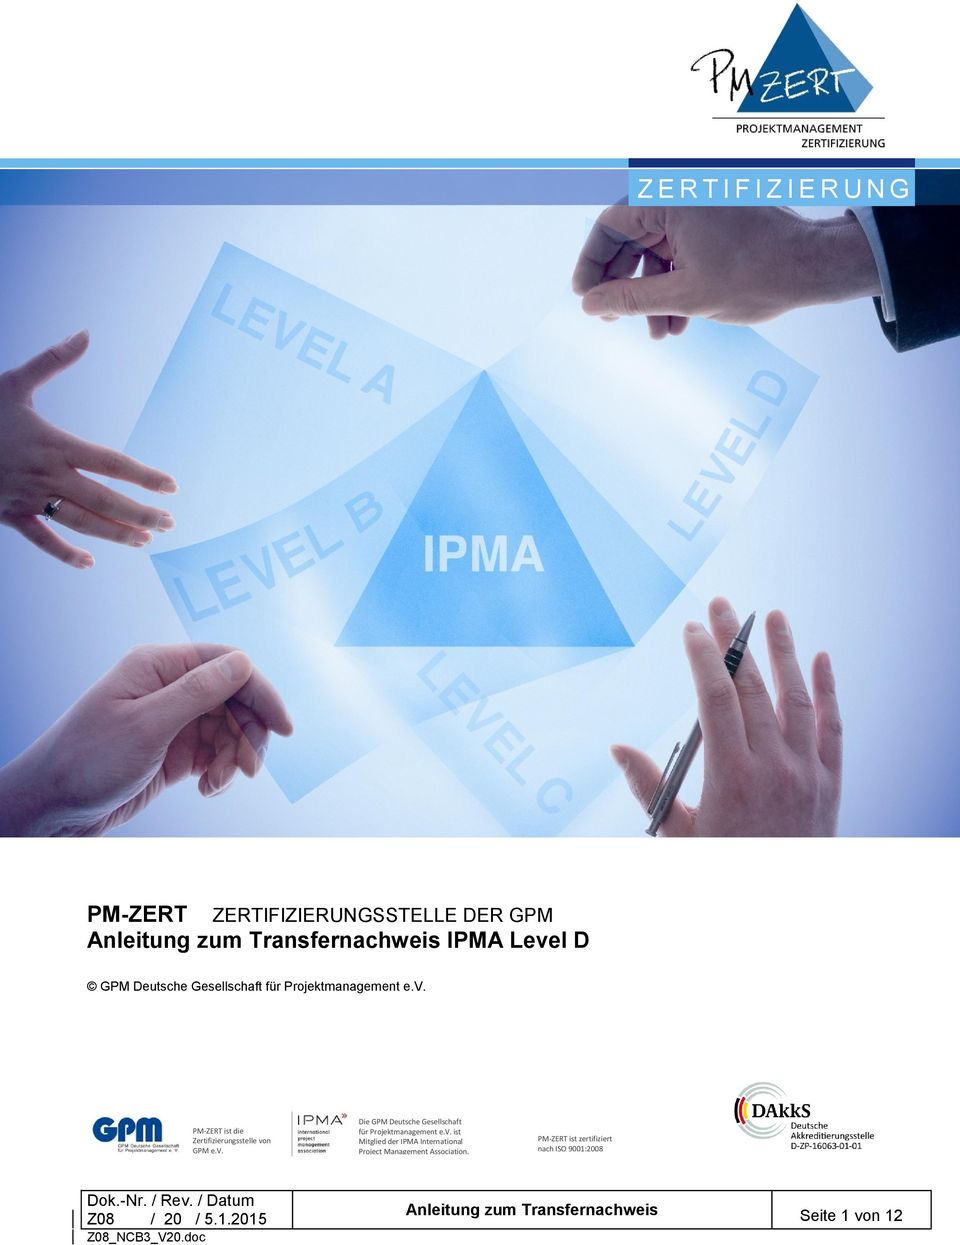 v. Die GPM Deutsche Gesellschaft für Projektmanagement e.v. ist Mitglied der IPMA International Project Management Association.